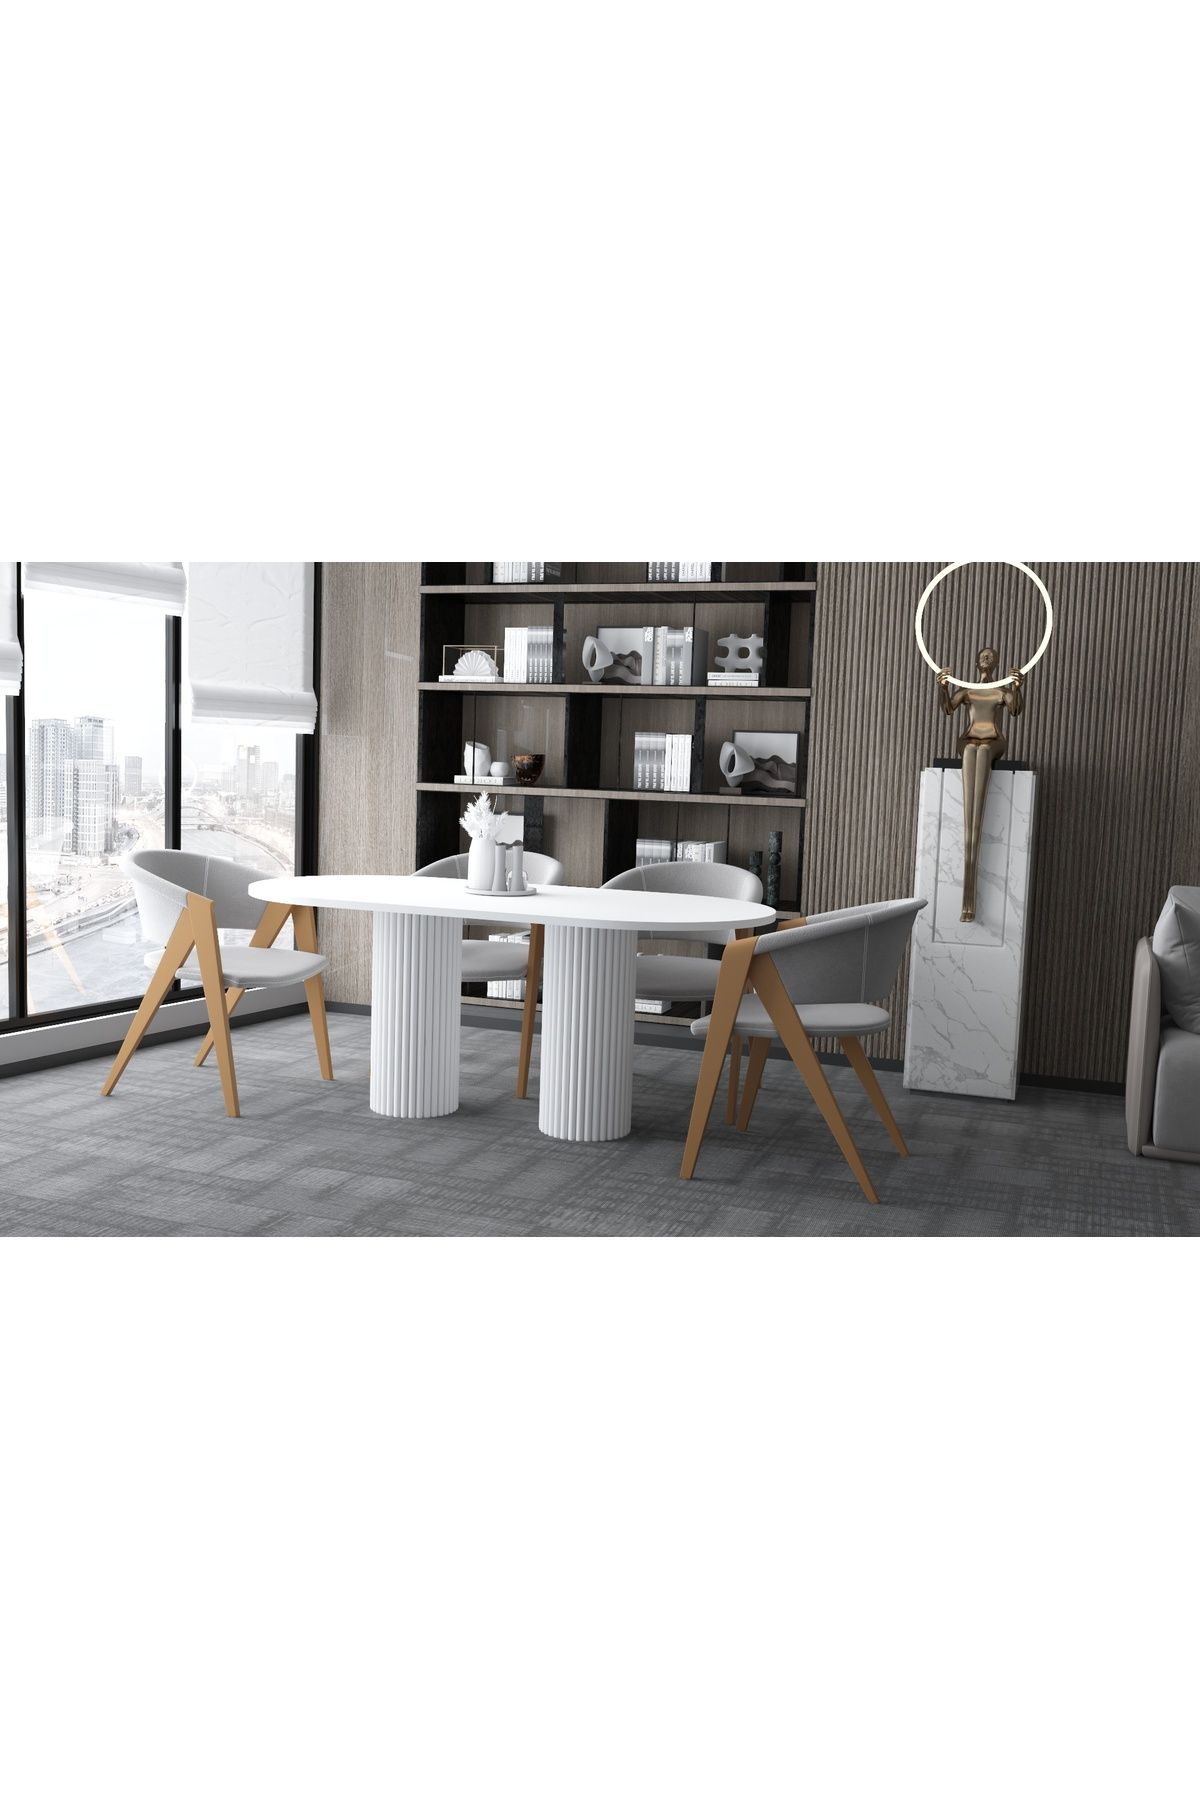 Seyvey Dizayn özel tasarım yemek masası salon masası 180*90 cm beyaz lake masa